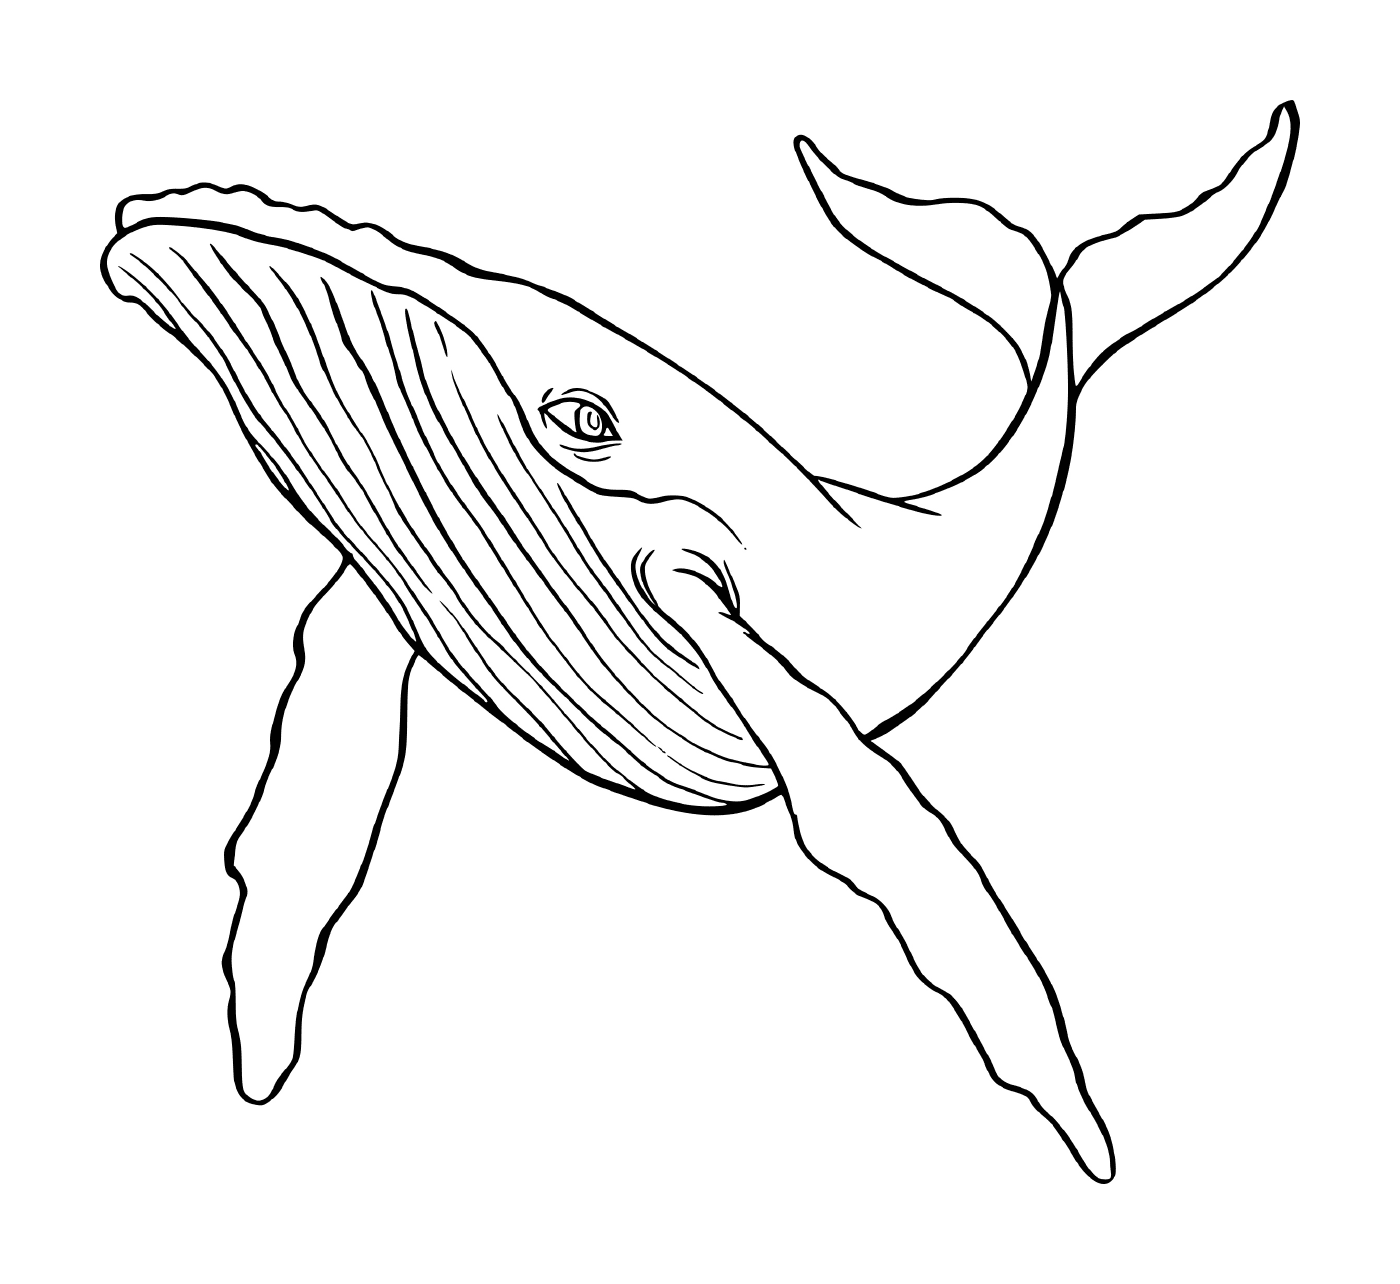  a humpback whale 